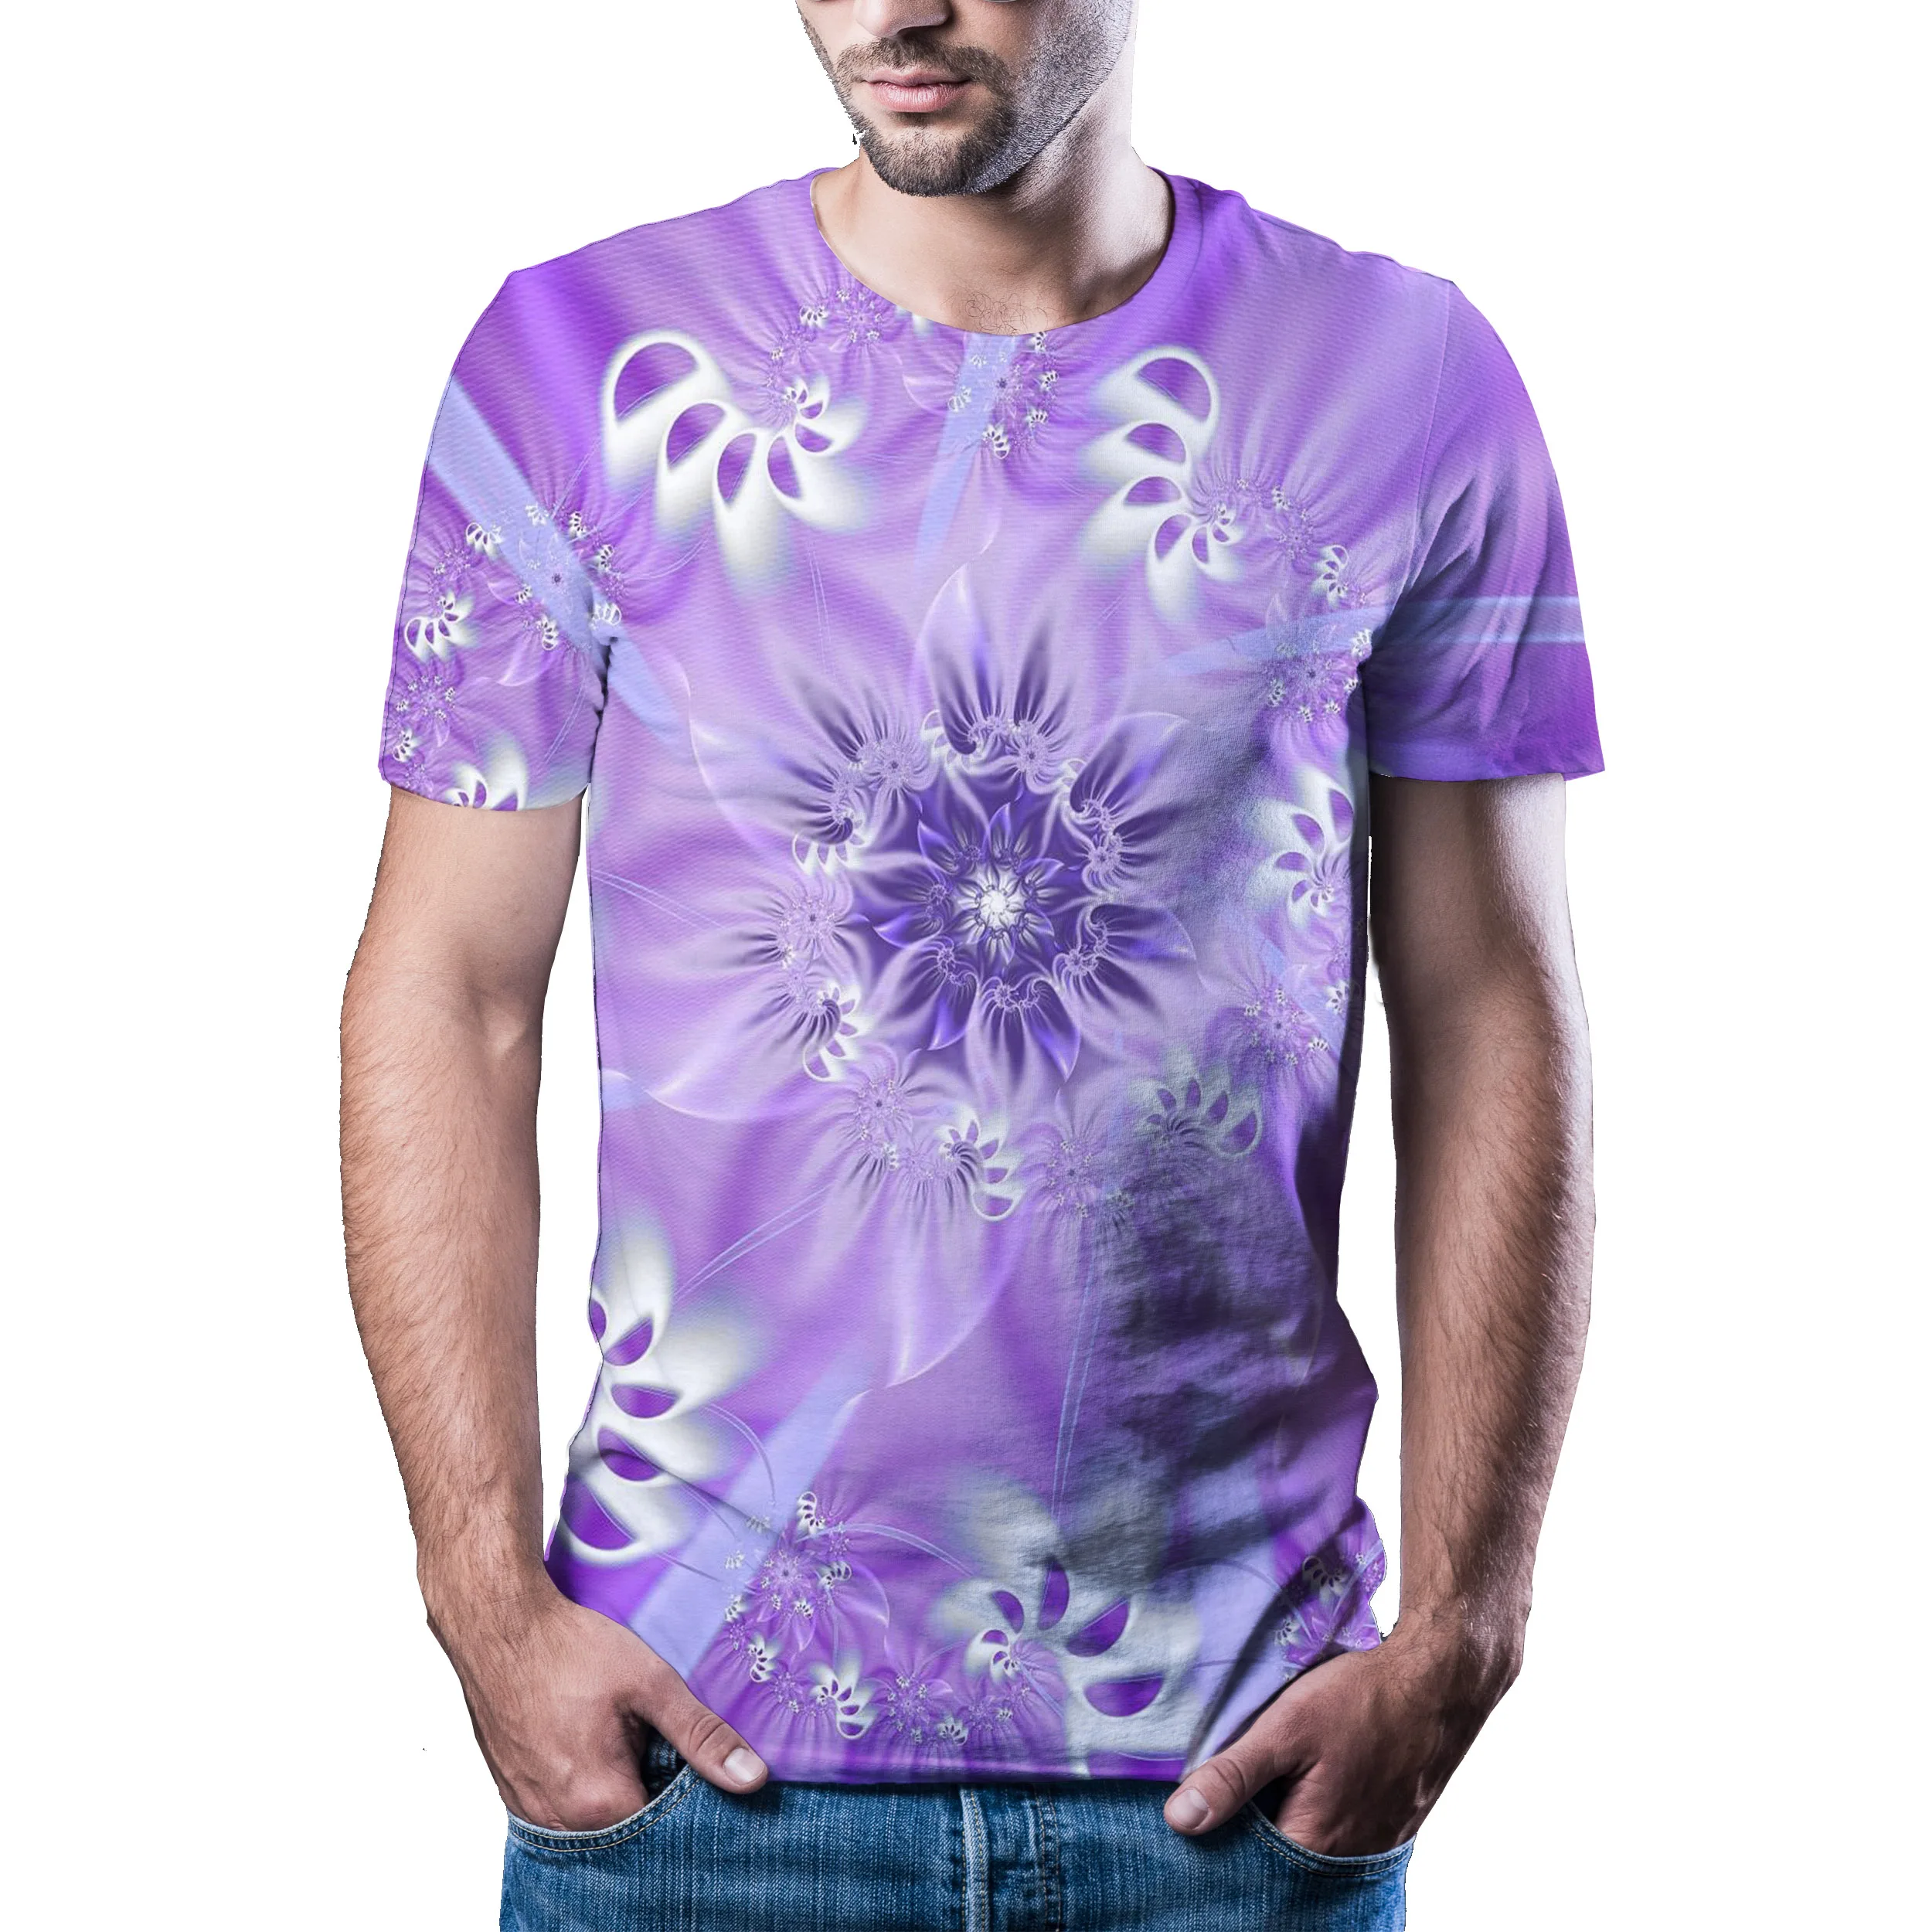 

2020 hottest summer new 3D visual hypnosis T-shirt men's casual Harajuku brand short-sleeved shirt color printed T-shirt Asian